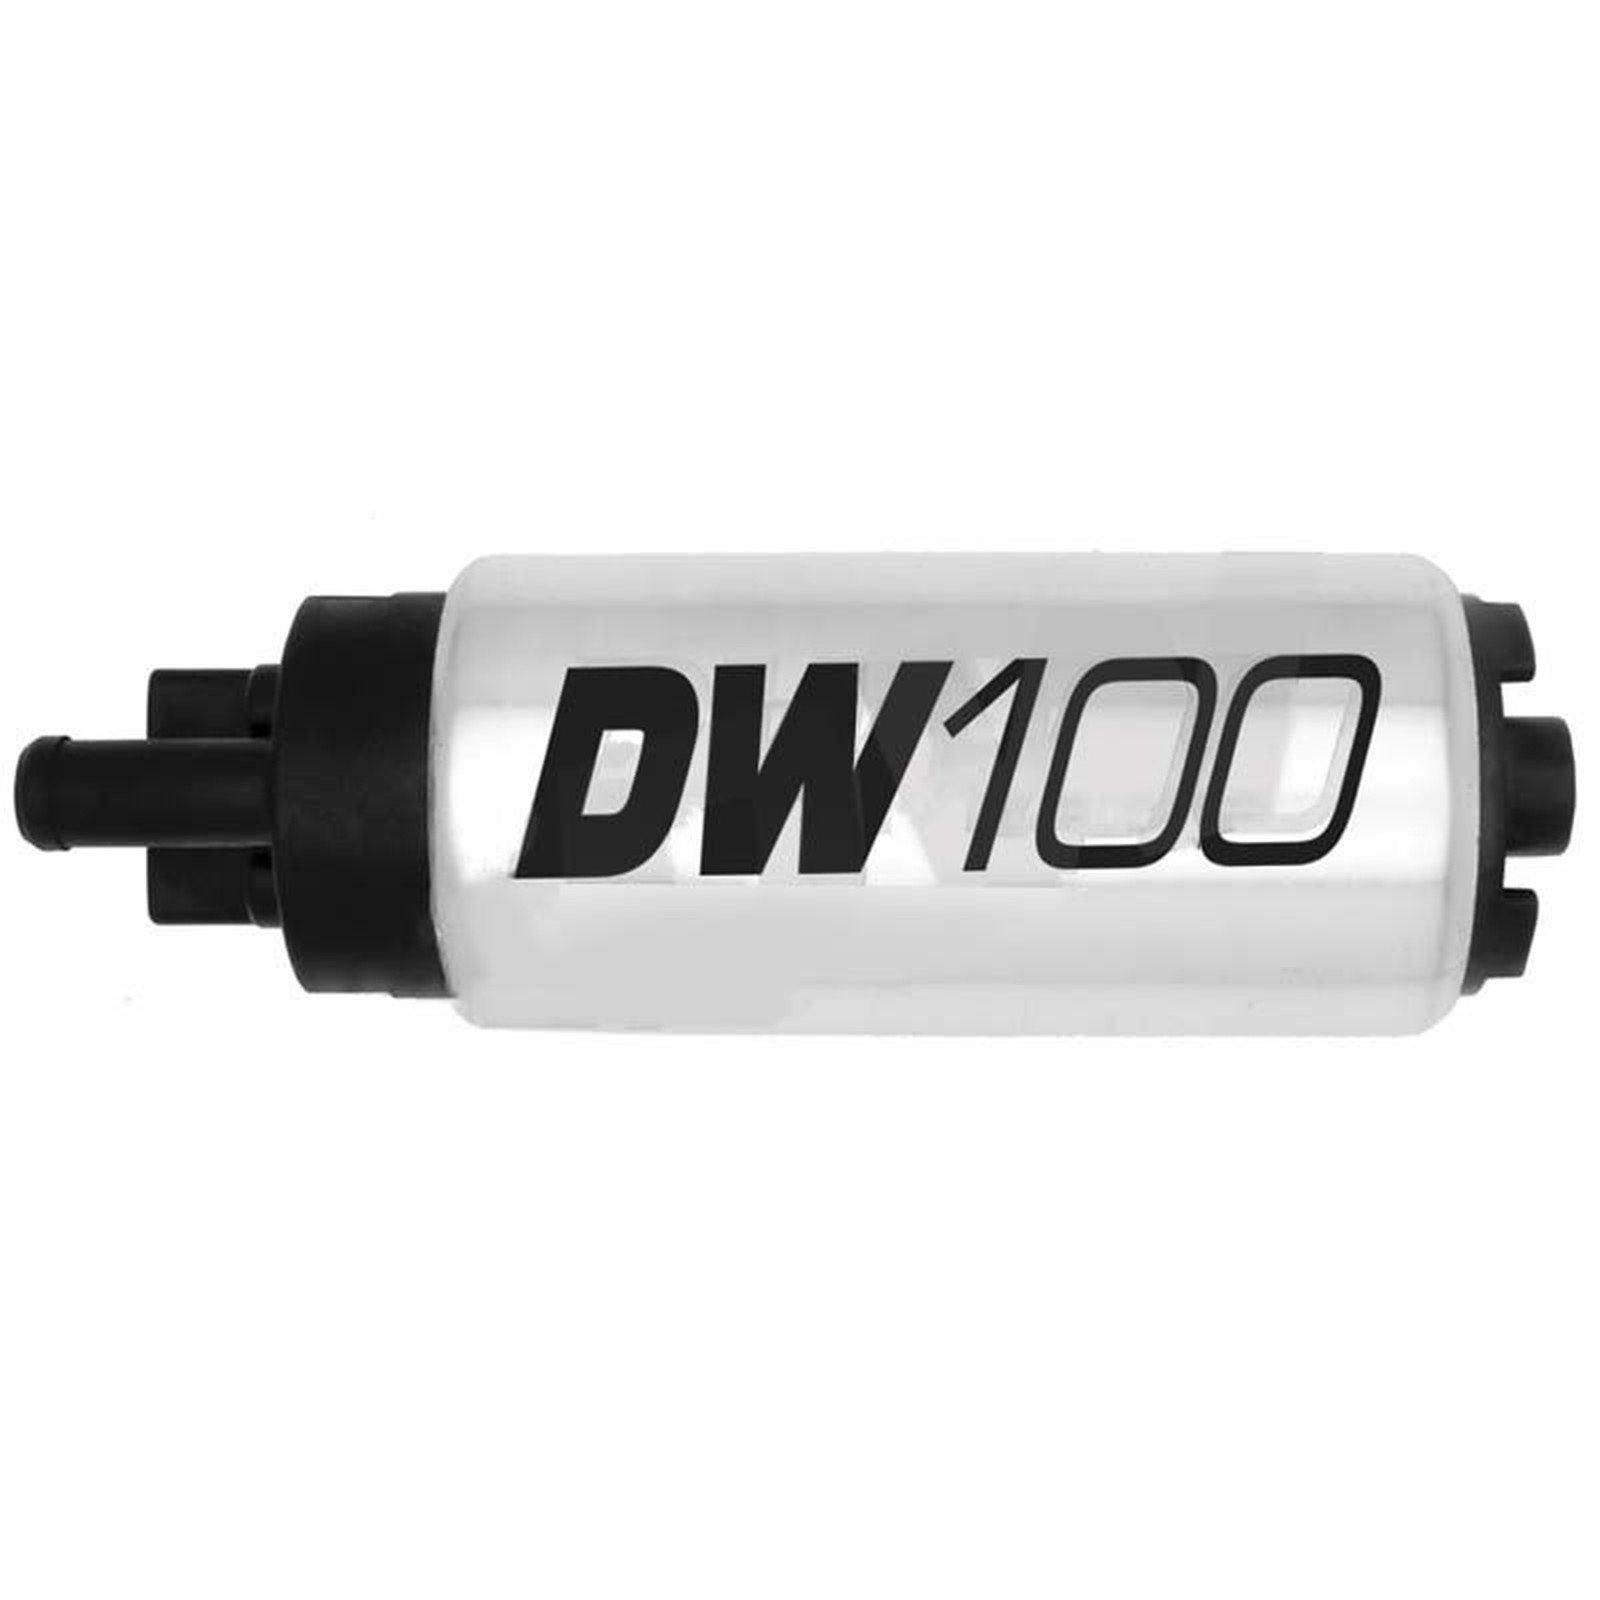 DEATSCHWERKS internal fuel pump DW100 universal 165 liters/hour - PARTS33 GmbH